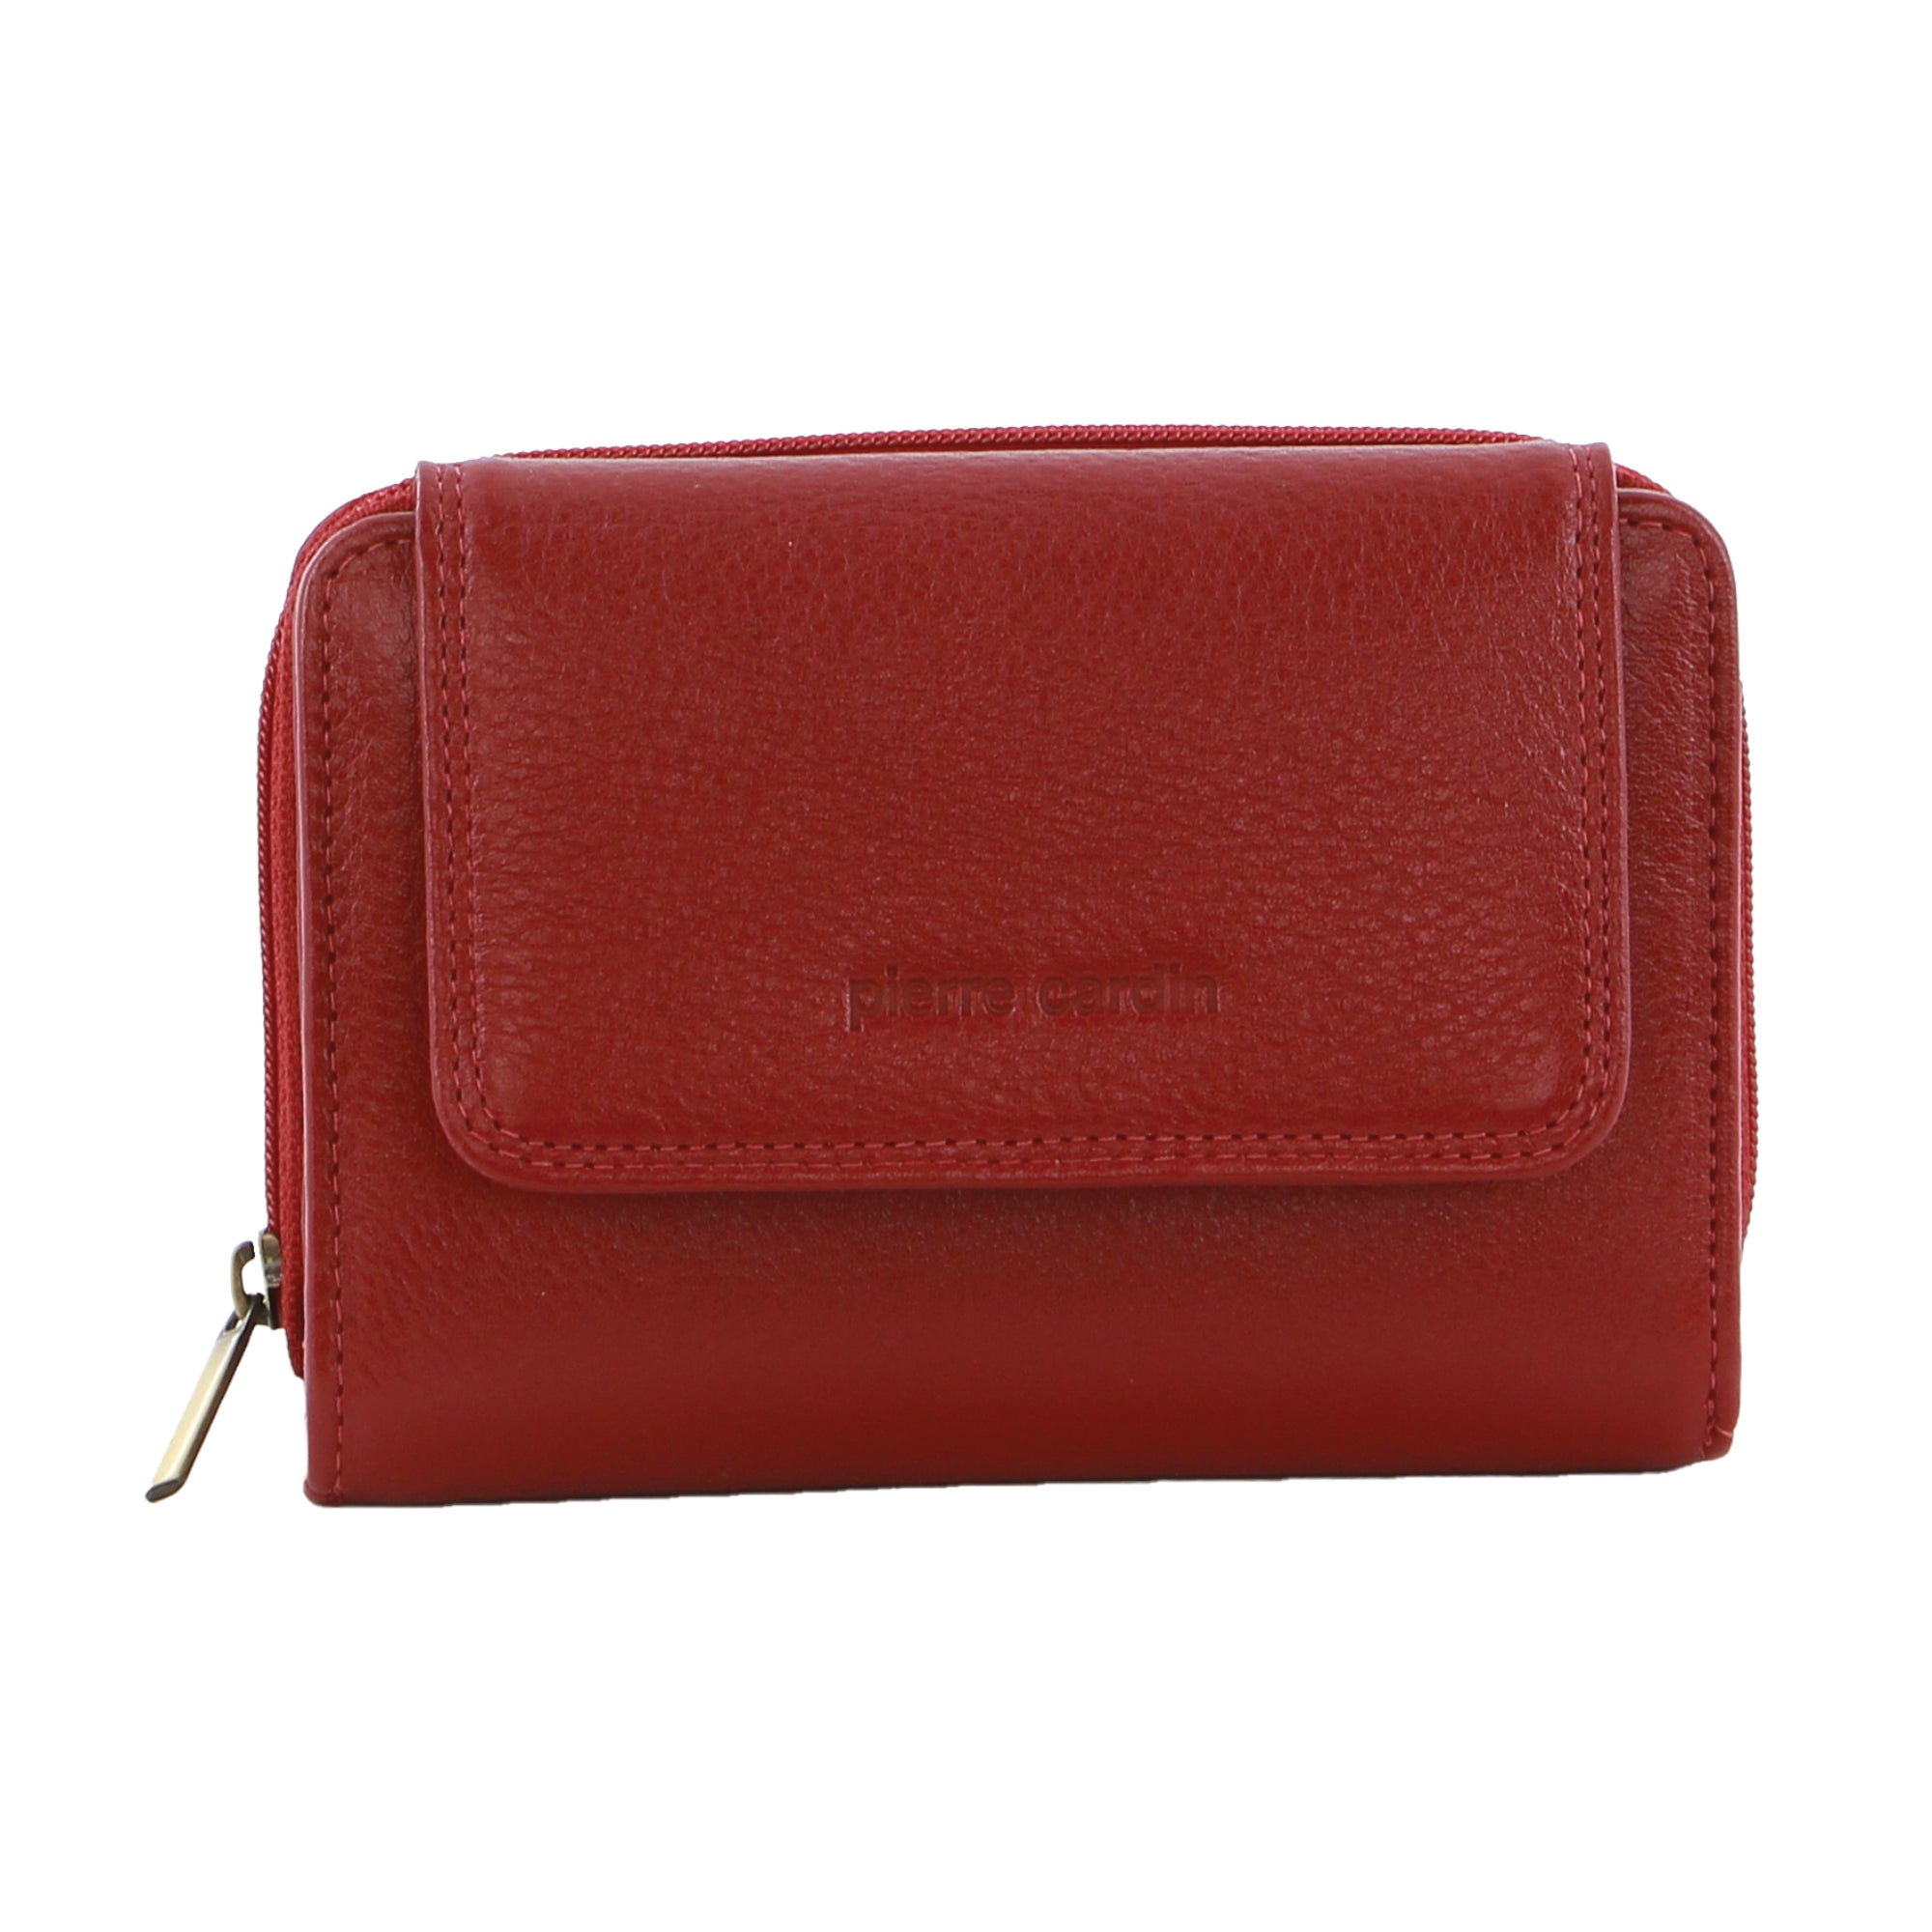 Pierre Cardin Women's Leather Compact Bi-Fold Tab Wallet in Red